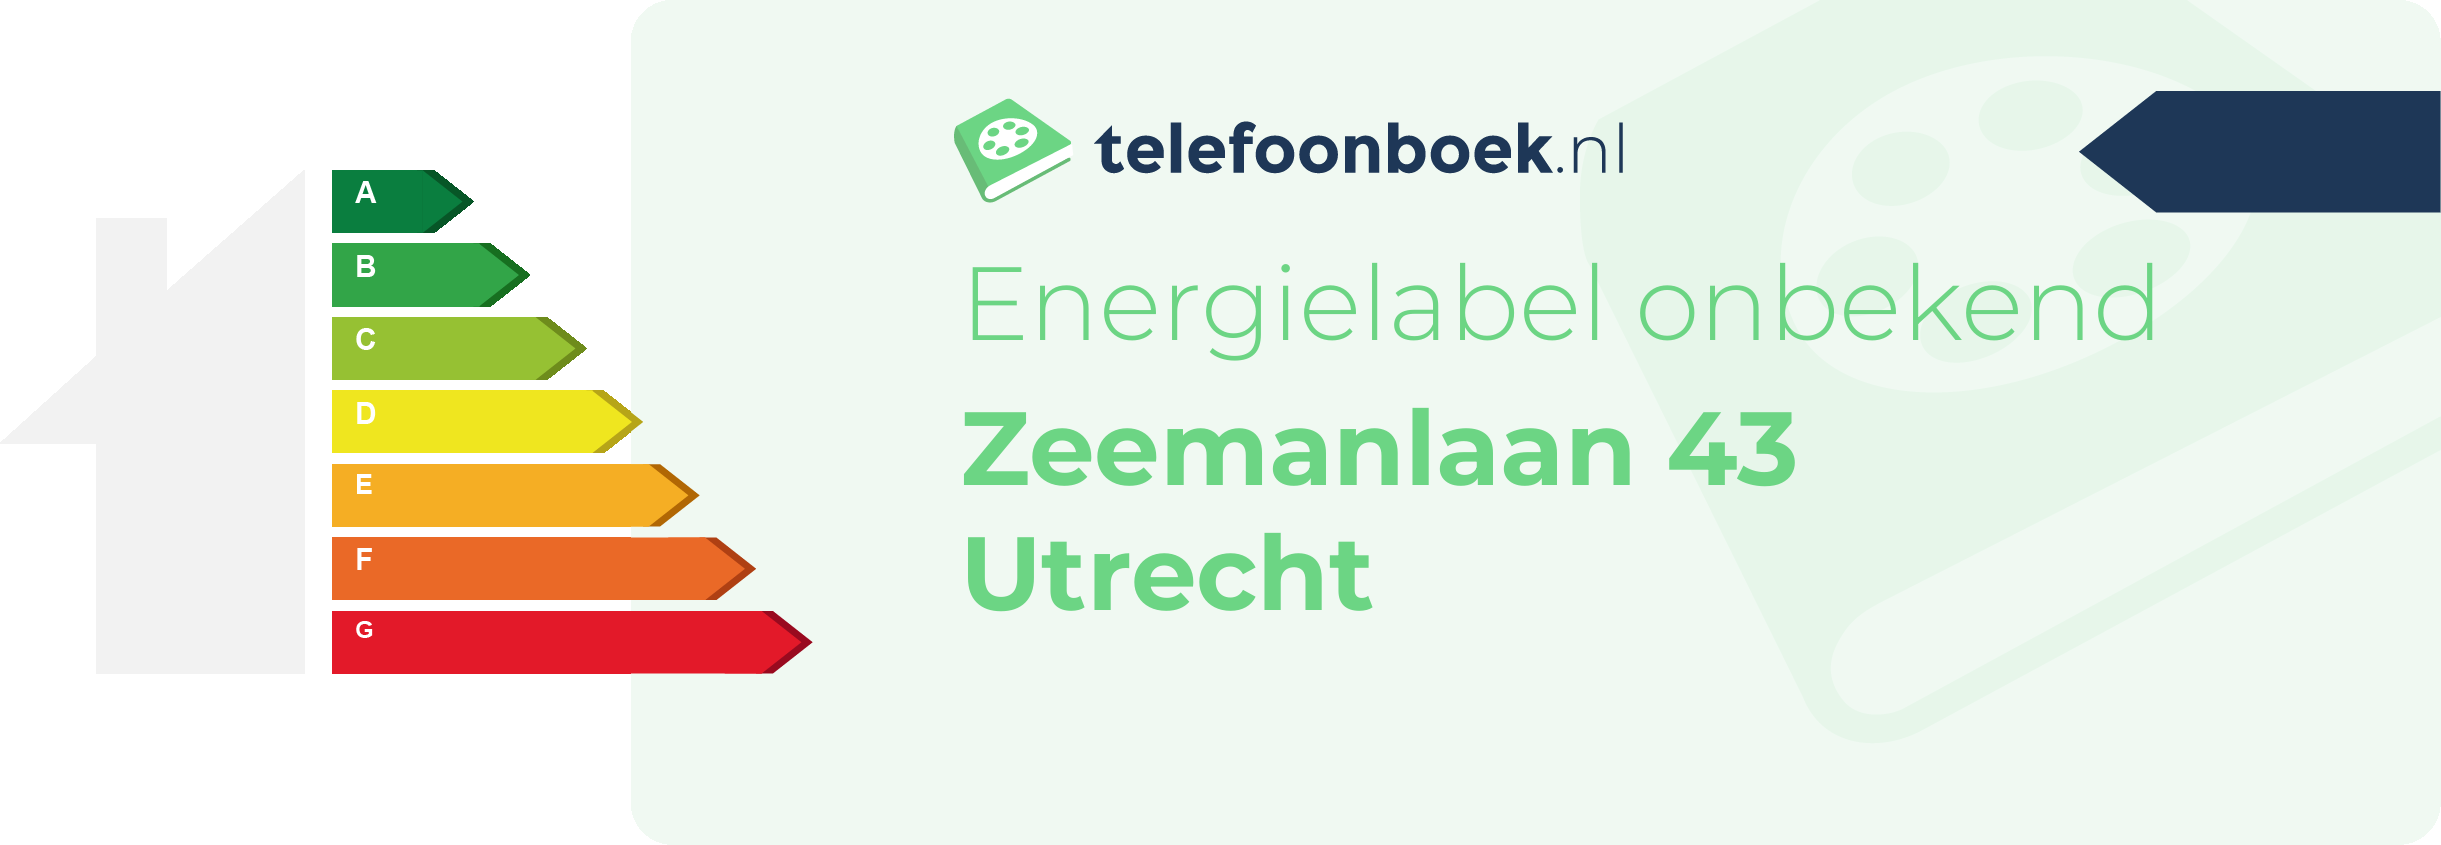 Energielabel Zeemanlaan 43 Utrecht